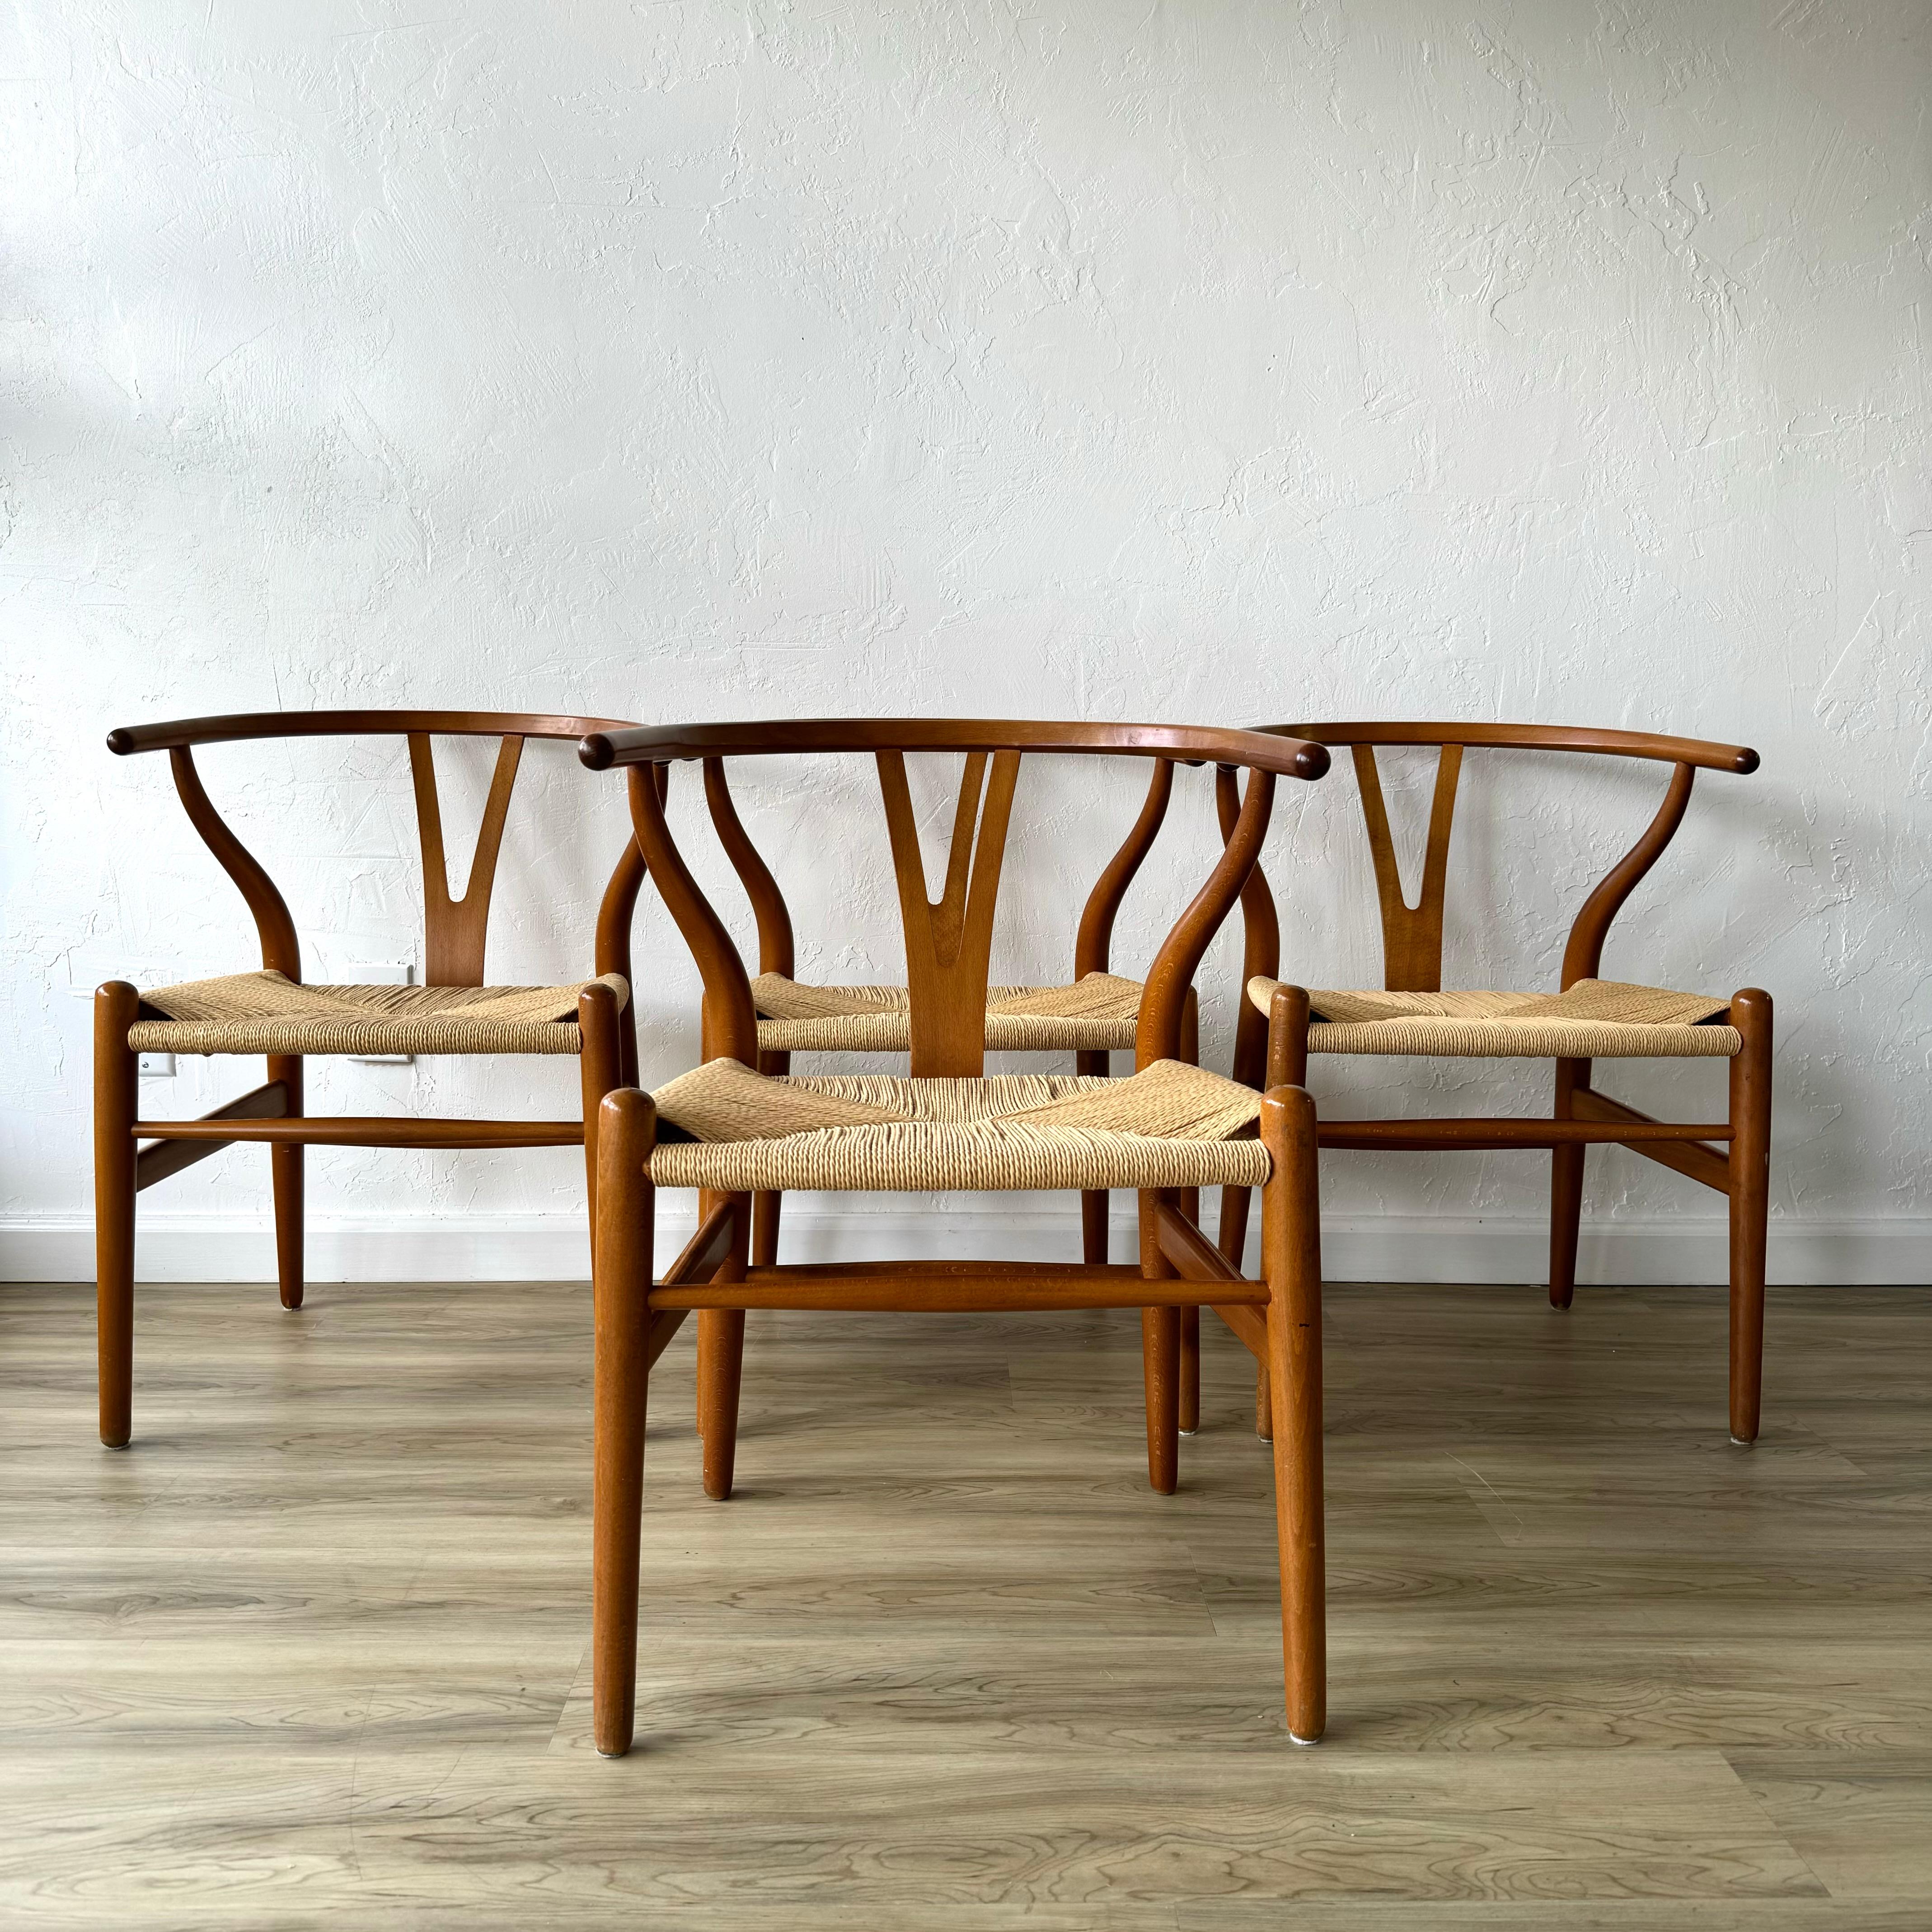 Un fantastique ensemble de 4 chaises à oreilles conçues par Hans Wegner pour Carl Hansen. Ces enregistrements ont été restaurés et réenregistrés avec du papier traditionnel danois. Ceux-ci sont fabriqués en bois de hêtre et datent probablement des